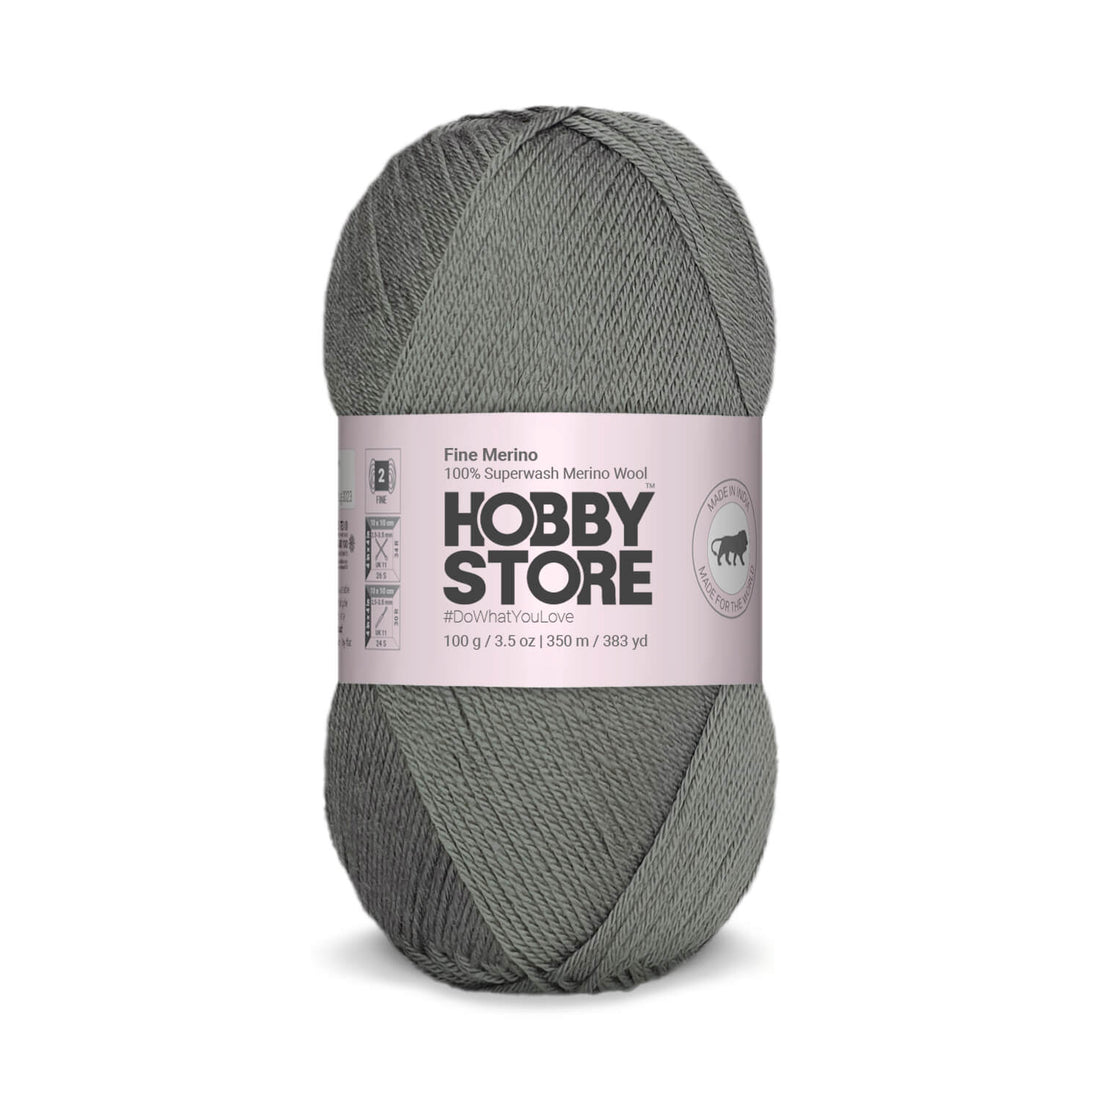 Fine Merino Wool by Hobby Store - Dark Grey FM007